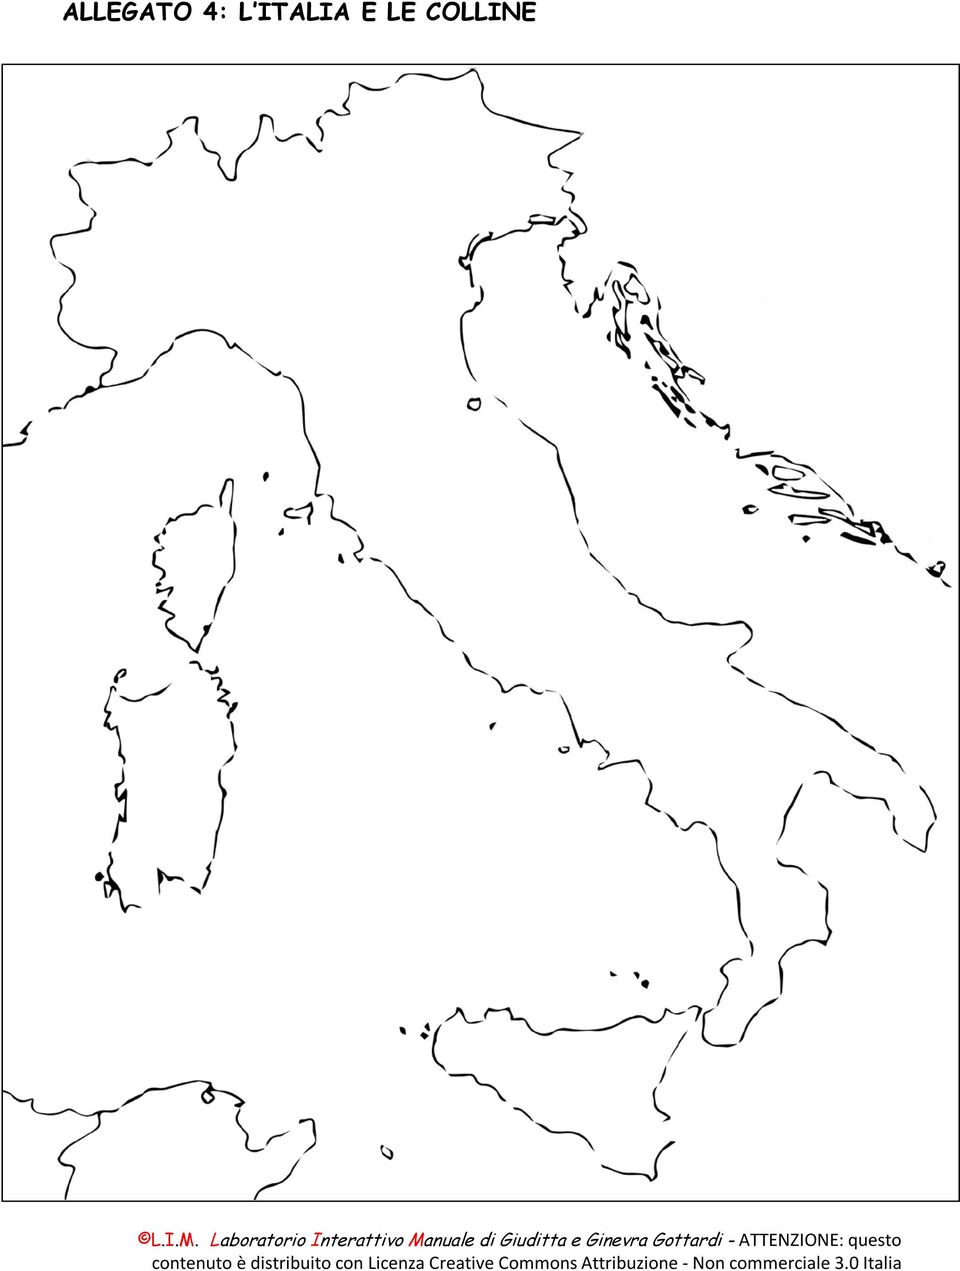 ITALIA E